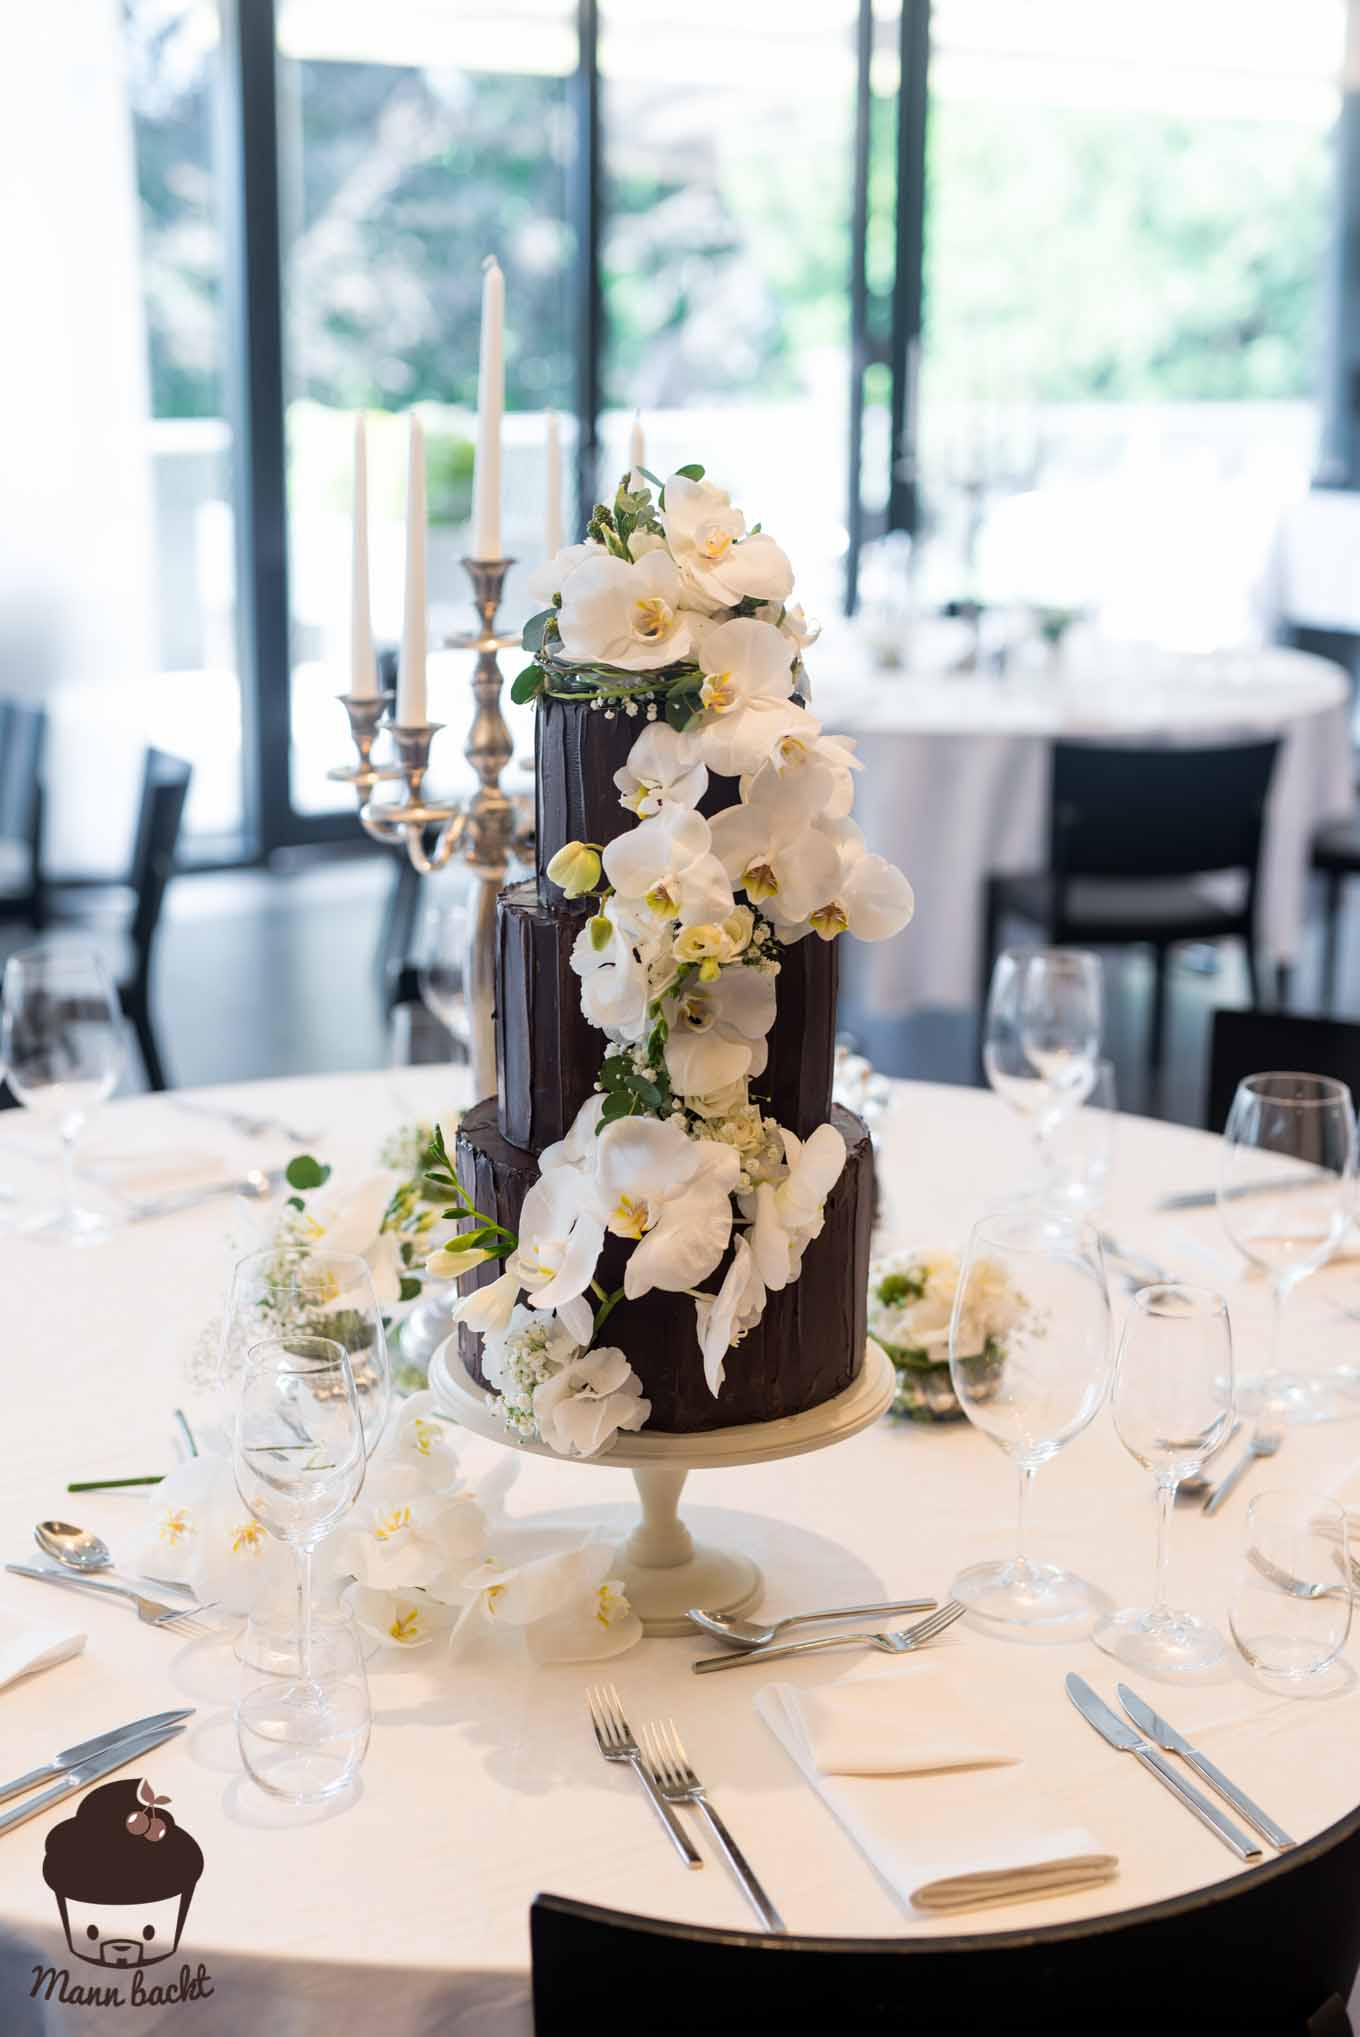 Mann backt Hochzeitstorte mit Orchideen Wedding Cake Orchids (1 von 7)